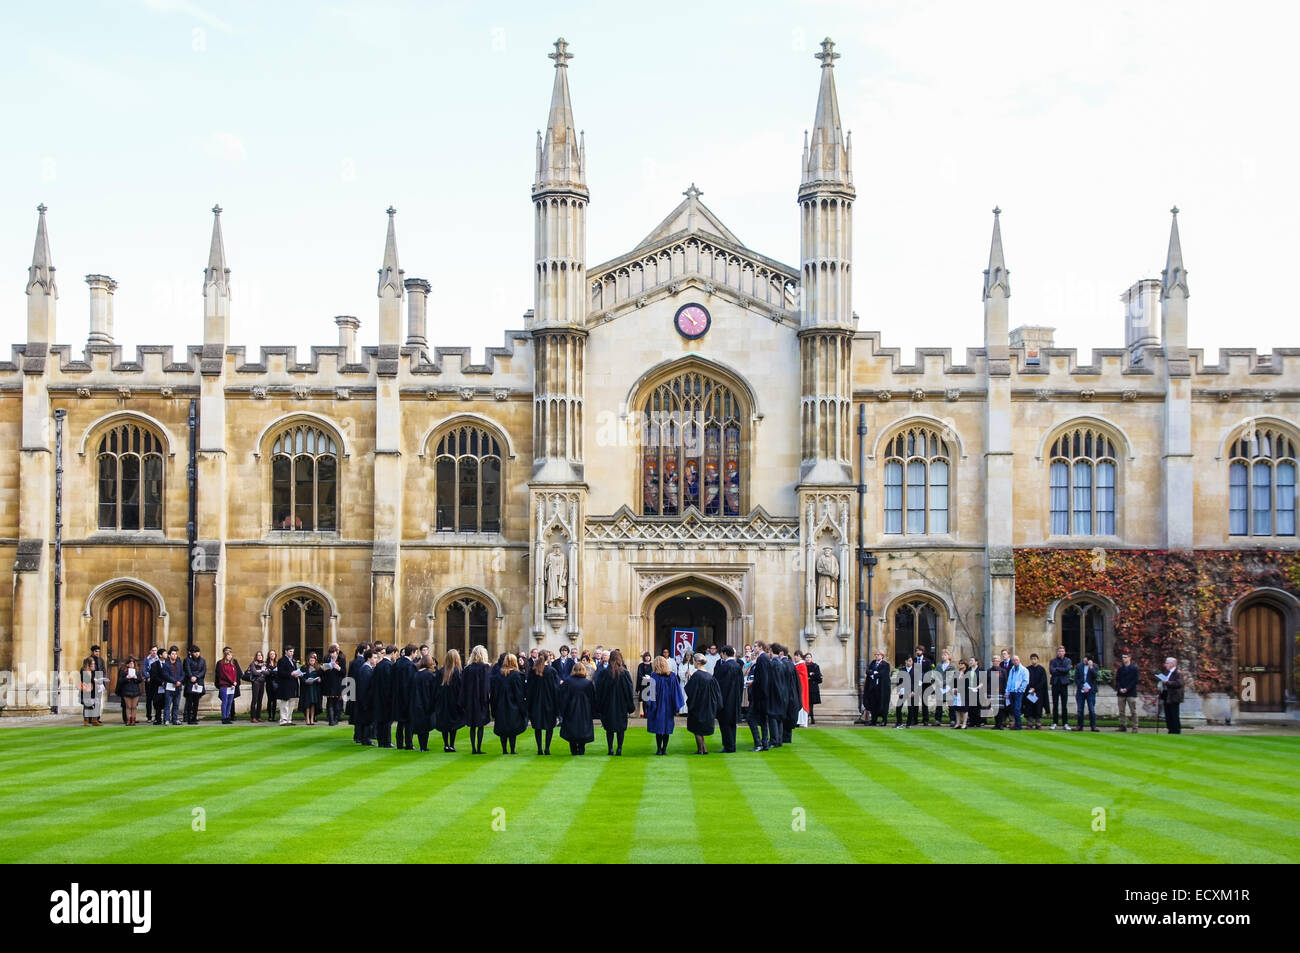 Der University of Cambridge, Corpus Christi College in Cambridge Cambridgeshire England Vereinigtes Königreich Großbritannien Stockfoto